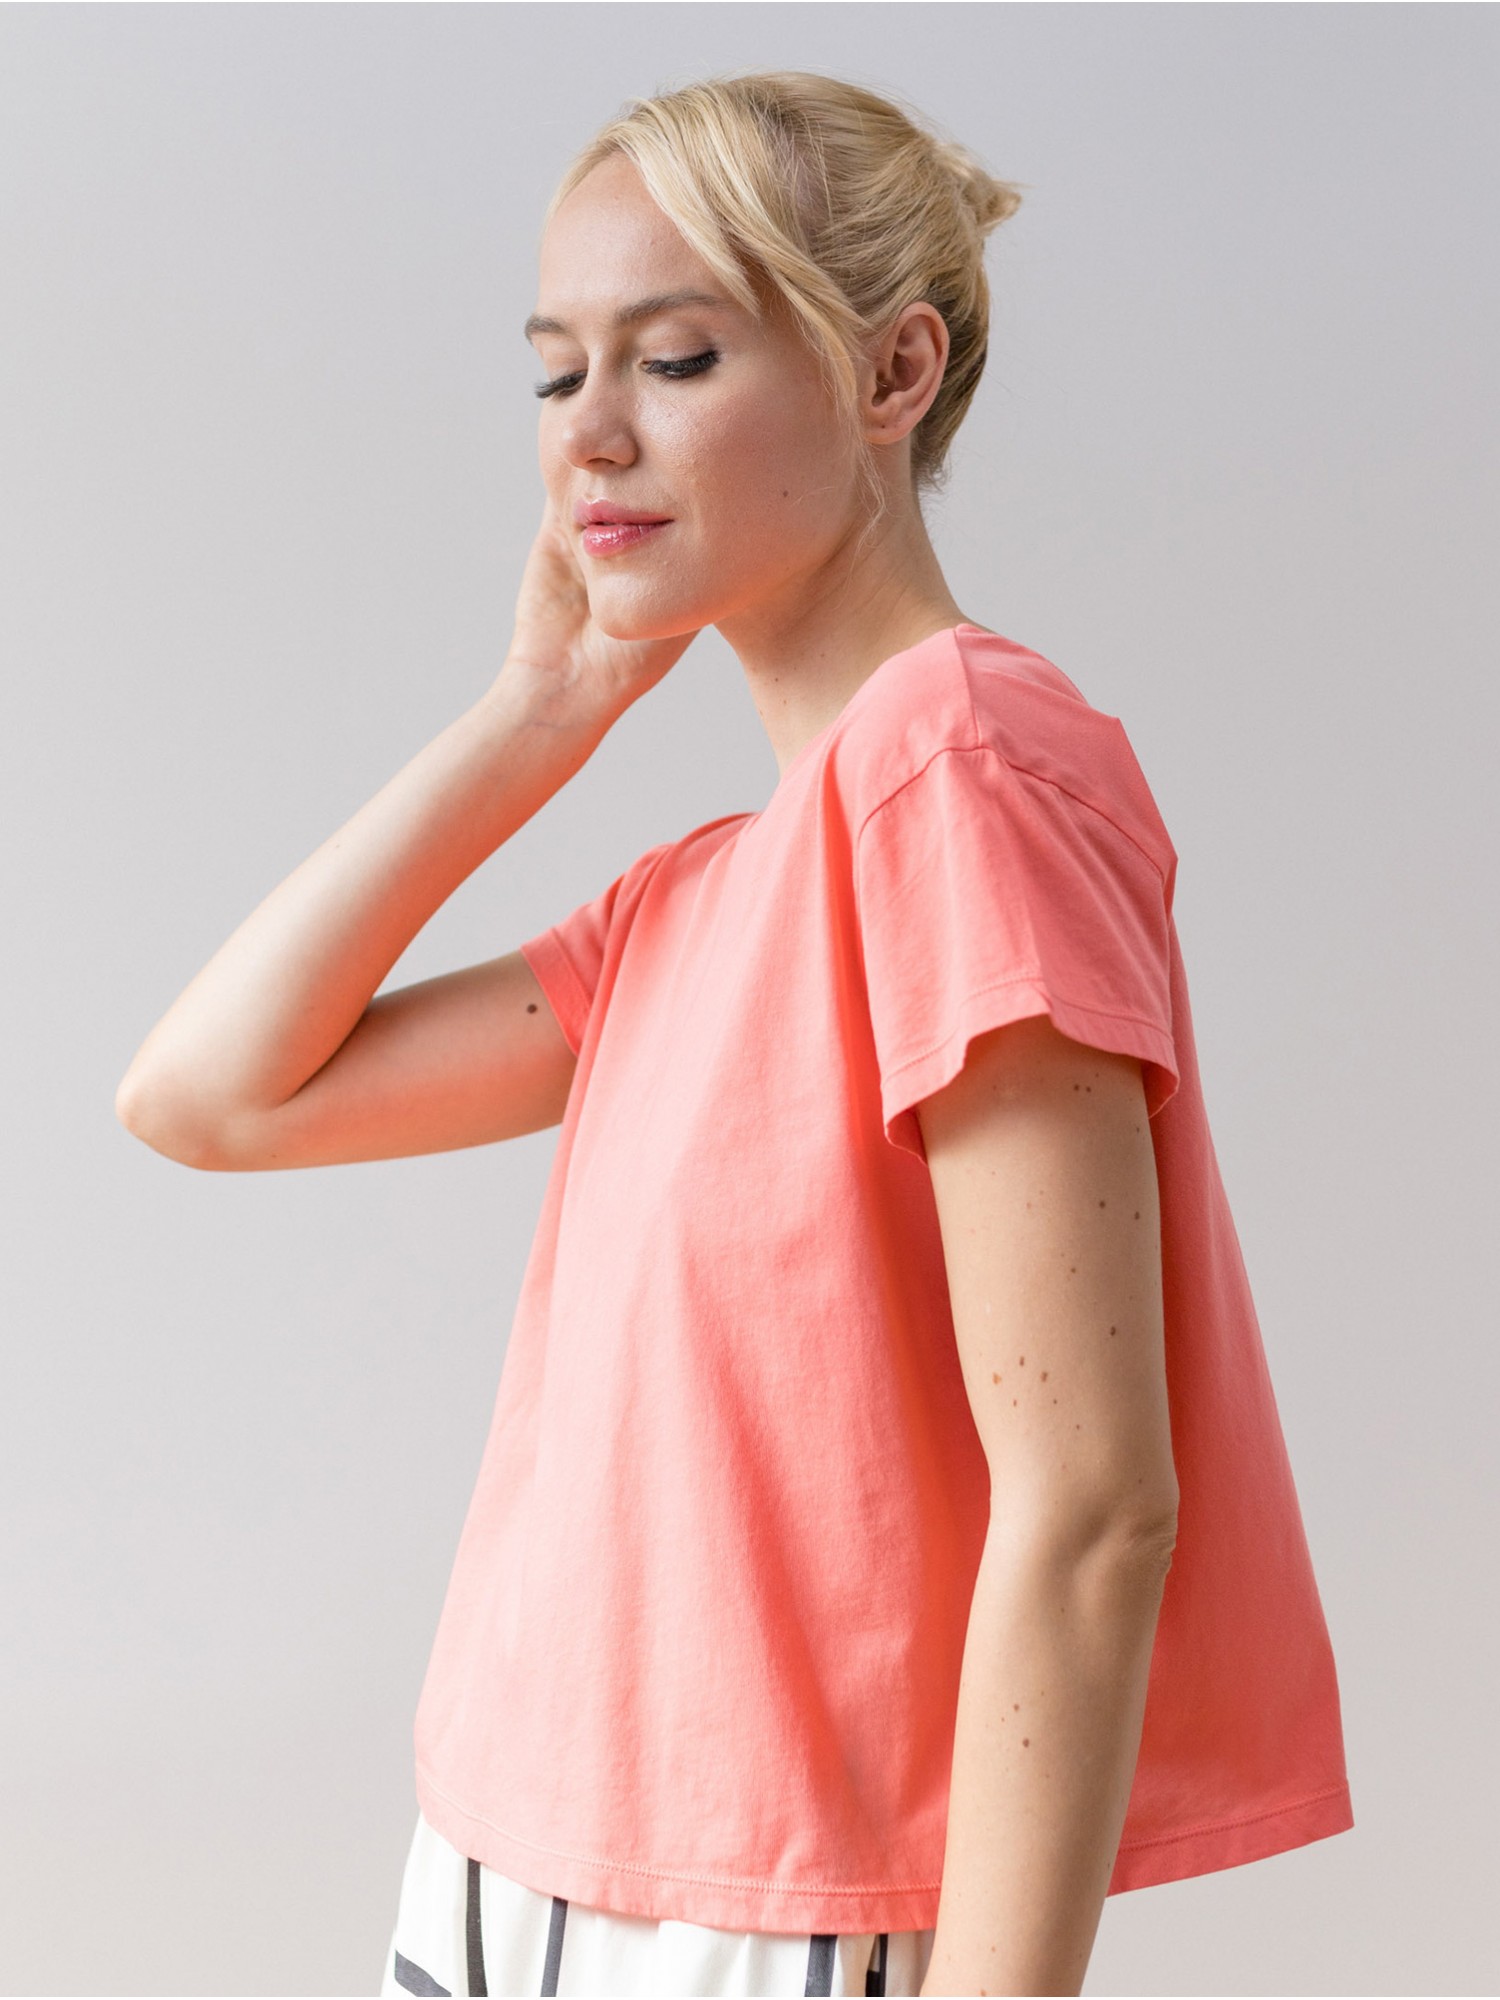 Camiseta oversize rosa Nalu 2107. Colección SS23 PAN Producto Básico en candelascloset. Tejido 100% algodón en manga corta